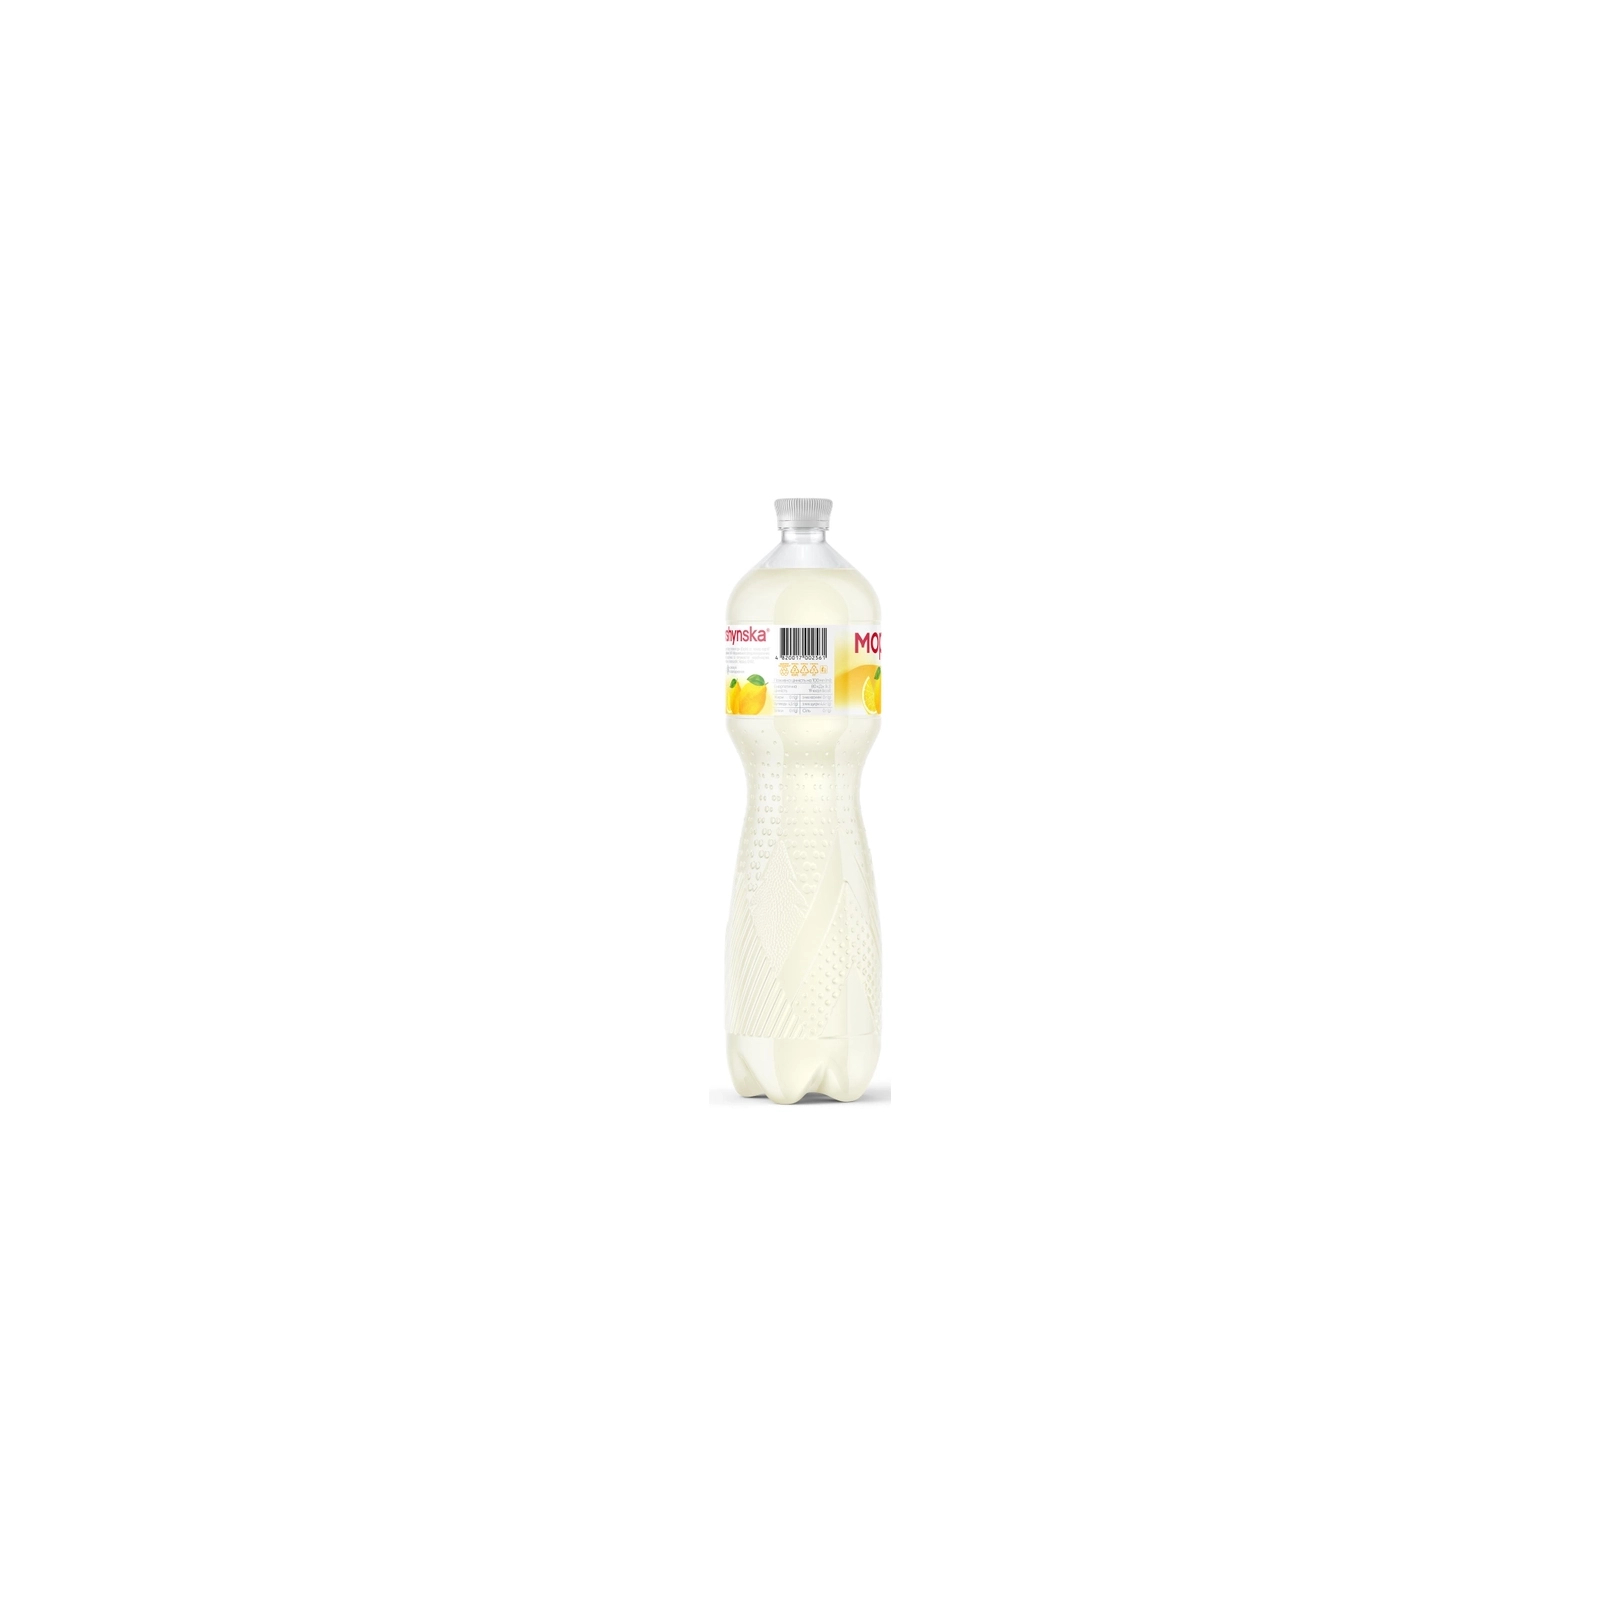 Напиток Моршинська сокосодержащий негазированный со вкусом лимона 0.5 л (4820017002547) изображение 3